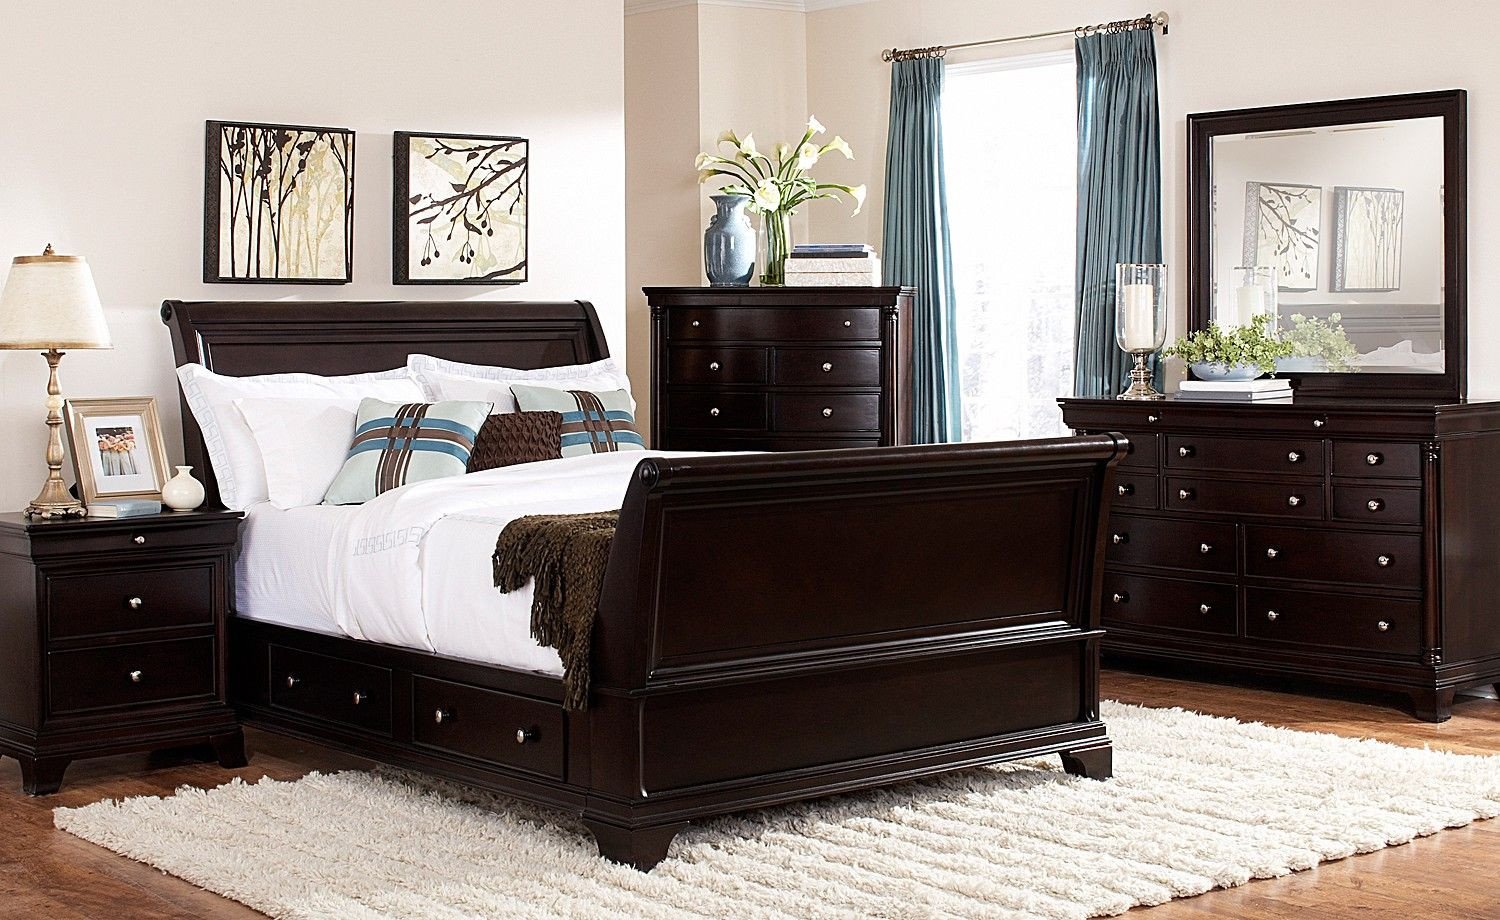 Used King Bedroom Set Inspirational Lakeshore Bedroom 7 Pc Queen Storage Bedroom Furniture